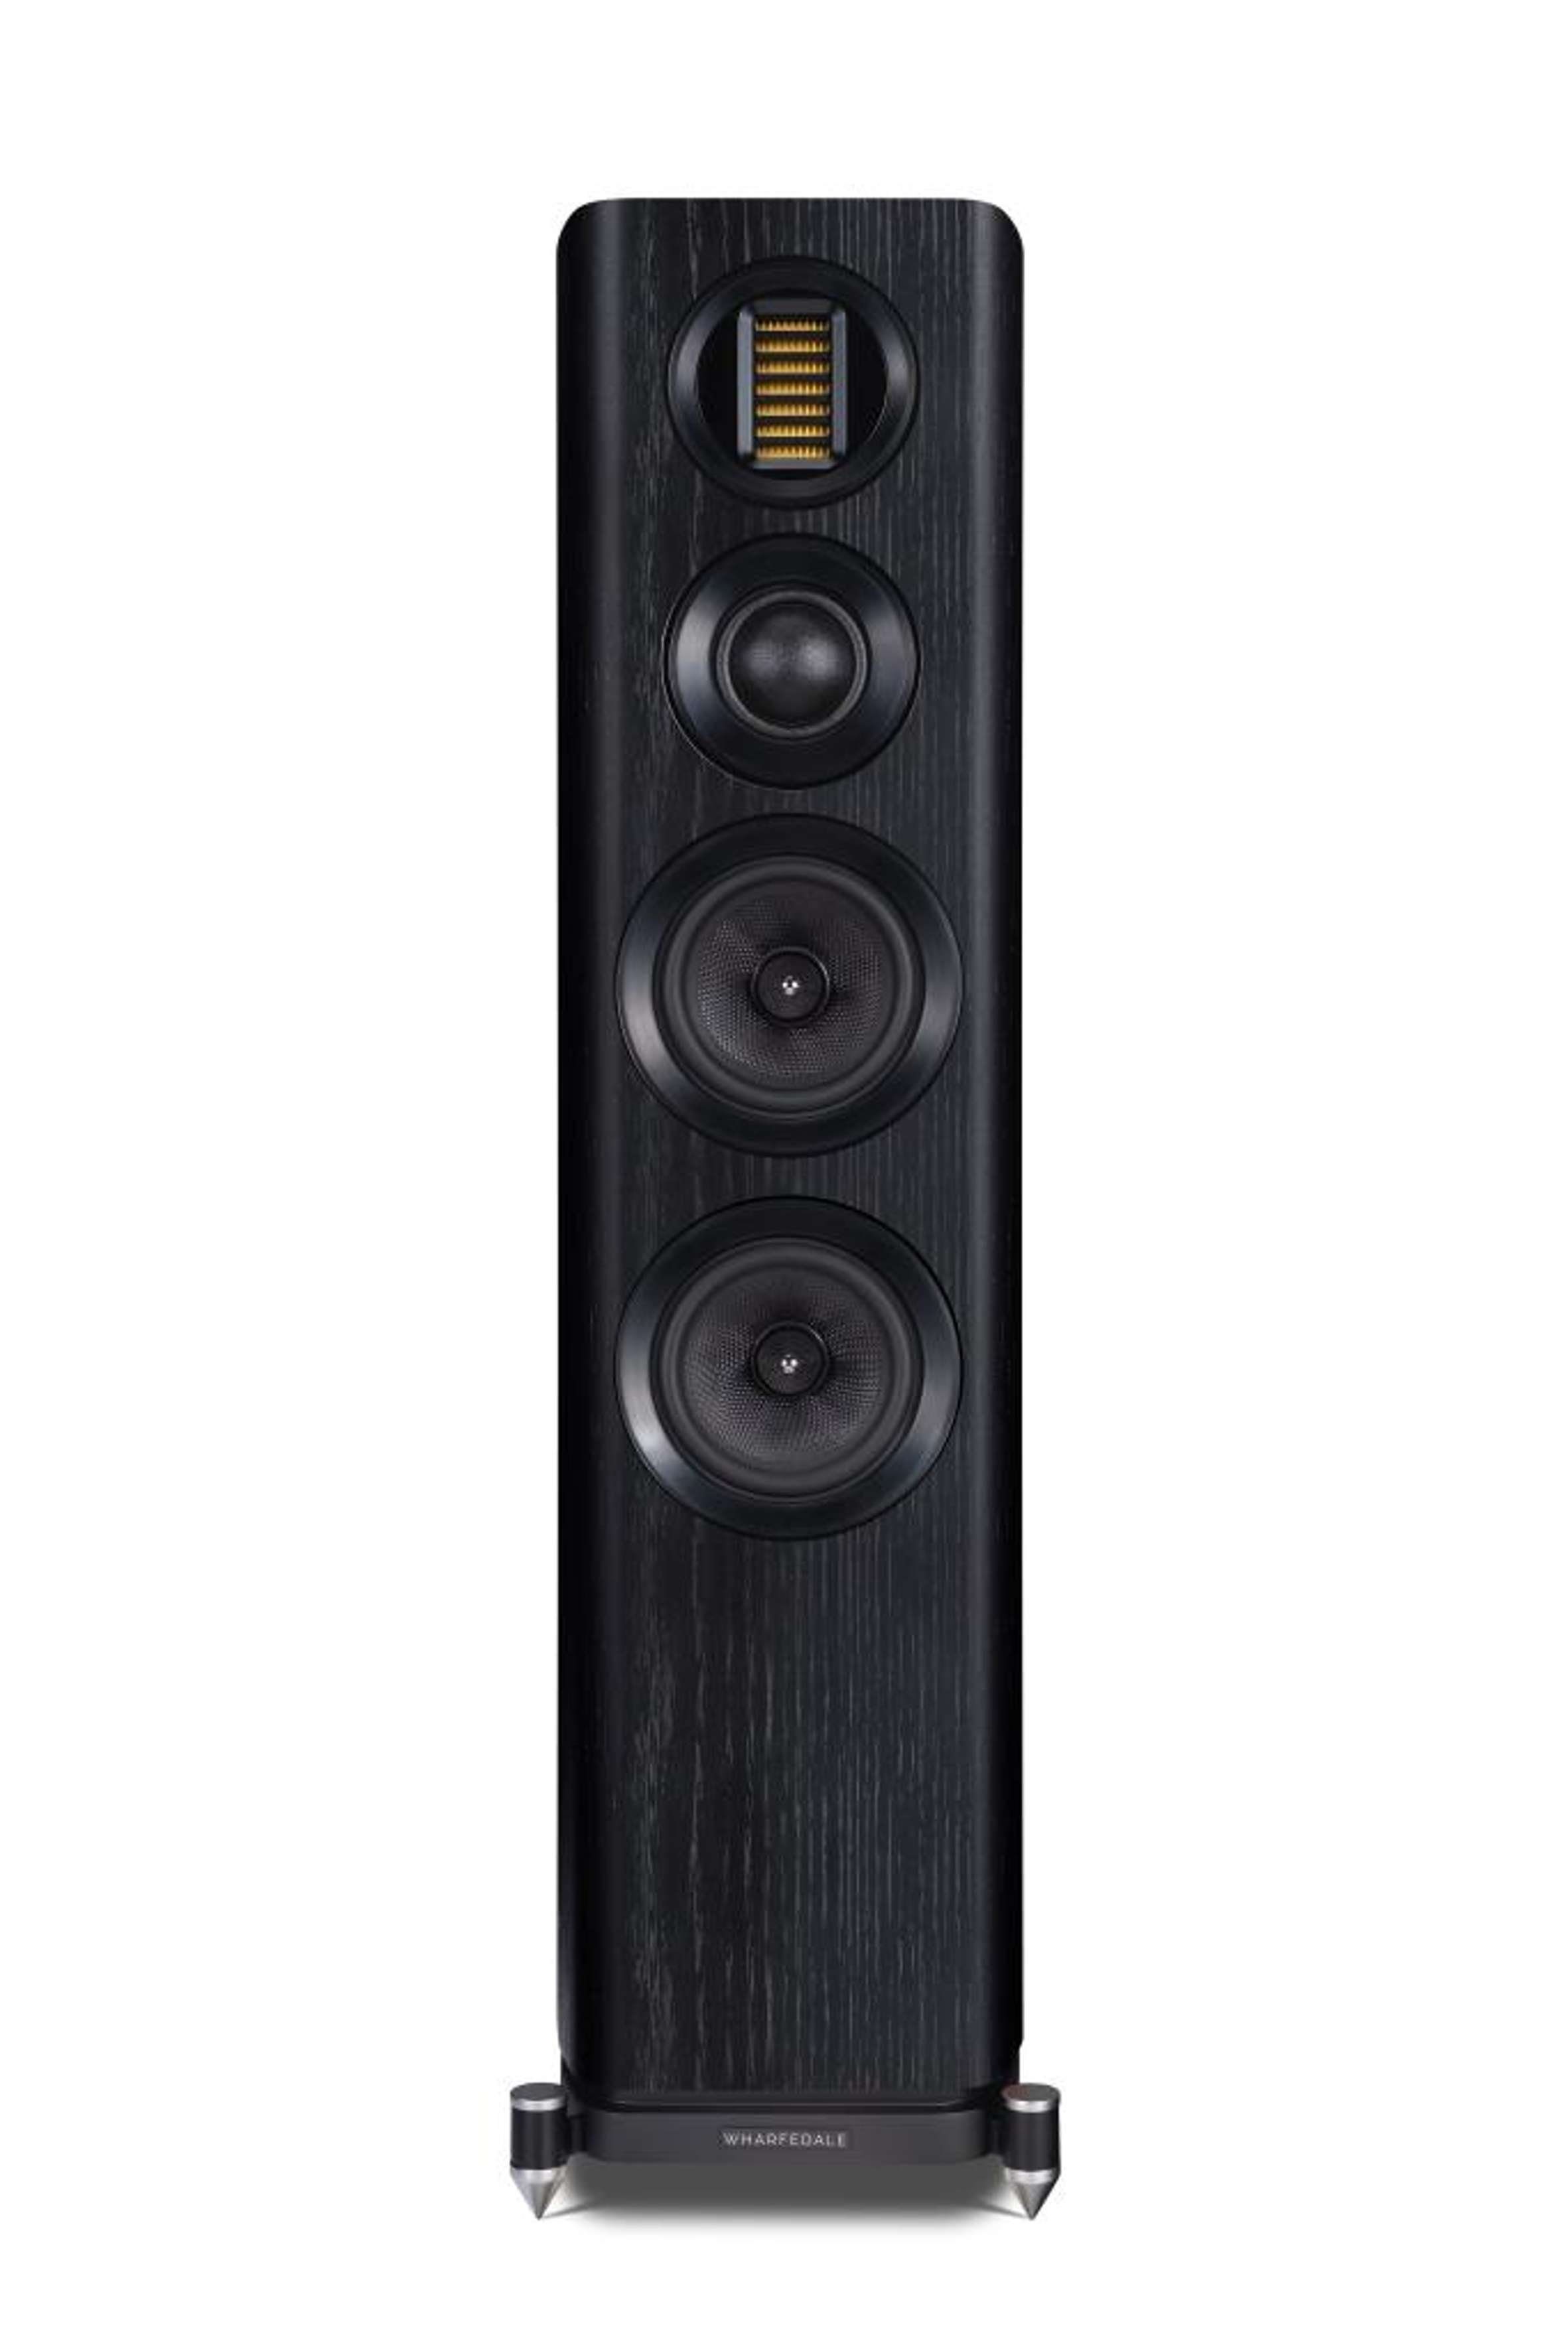 WHARFEDALE   EVO 4.3 Stand-Lautsprecher (wandnahe Aufstellung möglich durch Bassreflex im Sockel) schwarz | Kinder-Lautsprecher